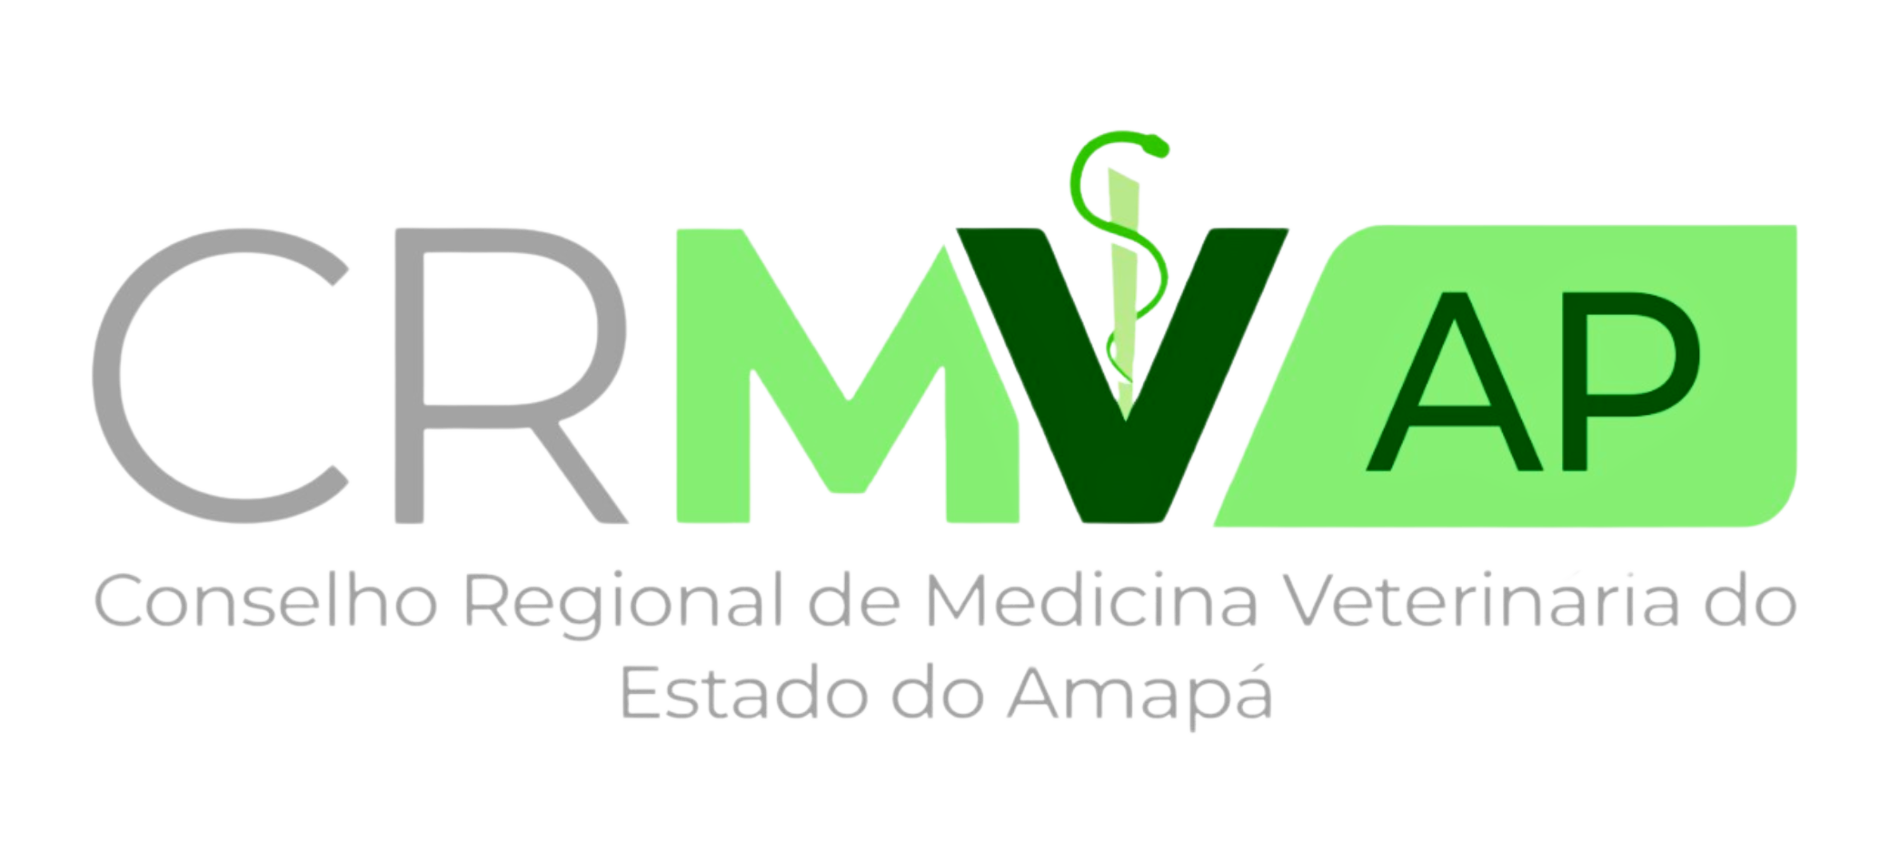 Conselho Regional de Medicina Veterinária do Estado do Amapá